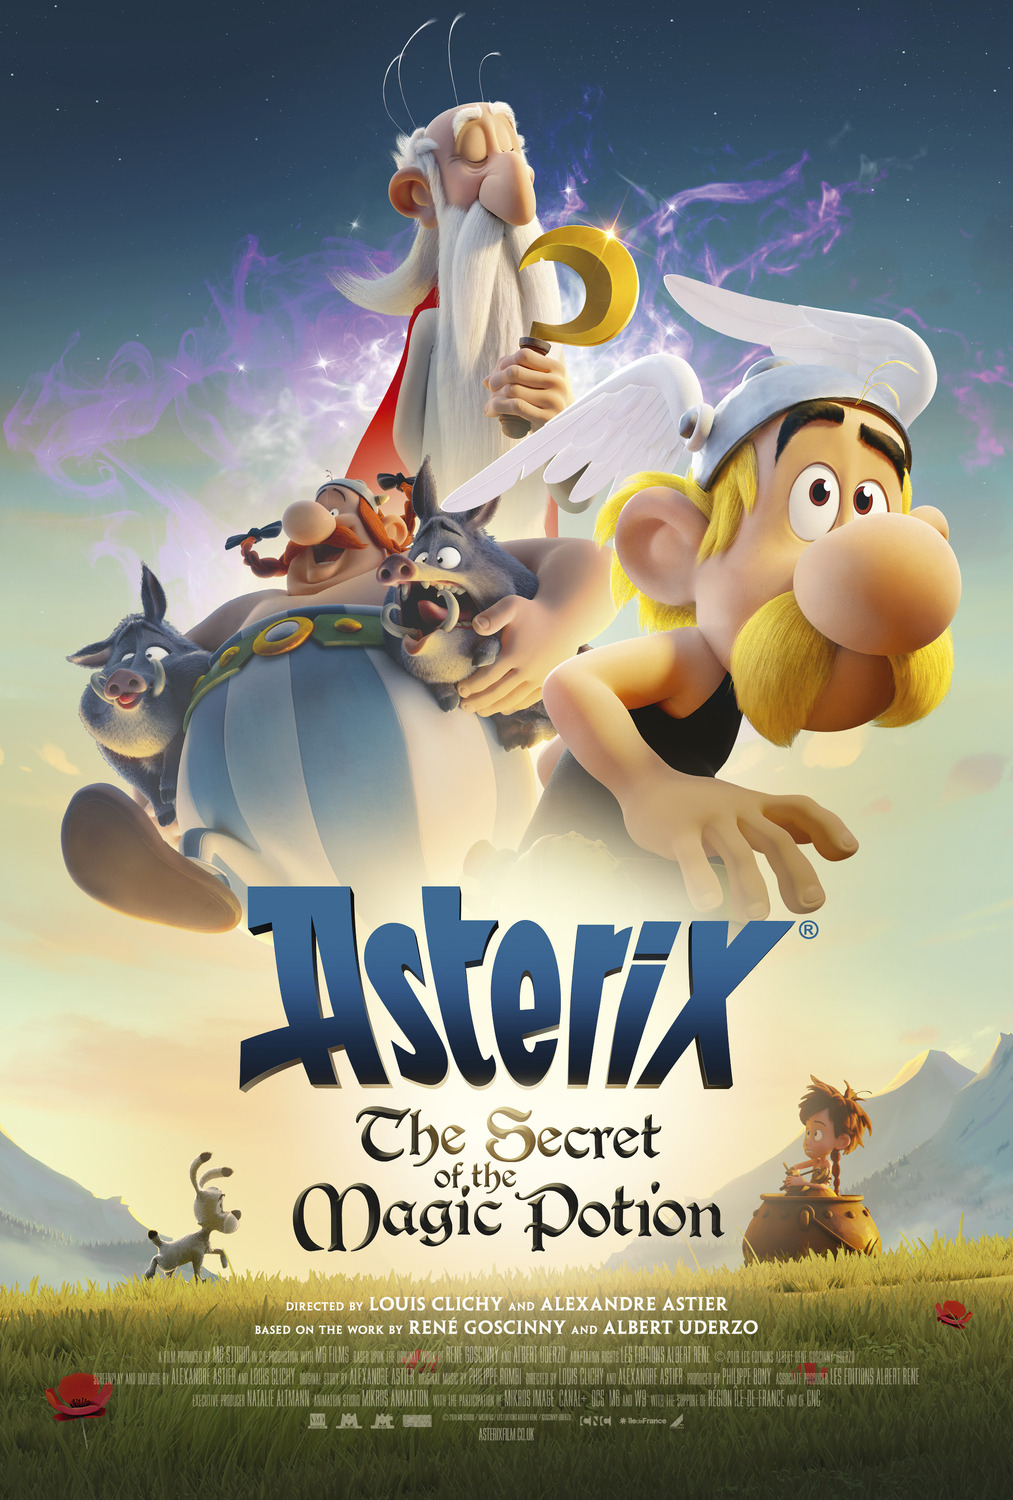 Extra Large Movie Poster Image for Astérix: Le secret de la potion magique (#2 of 8)